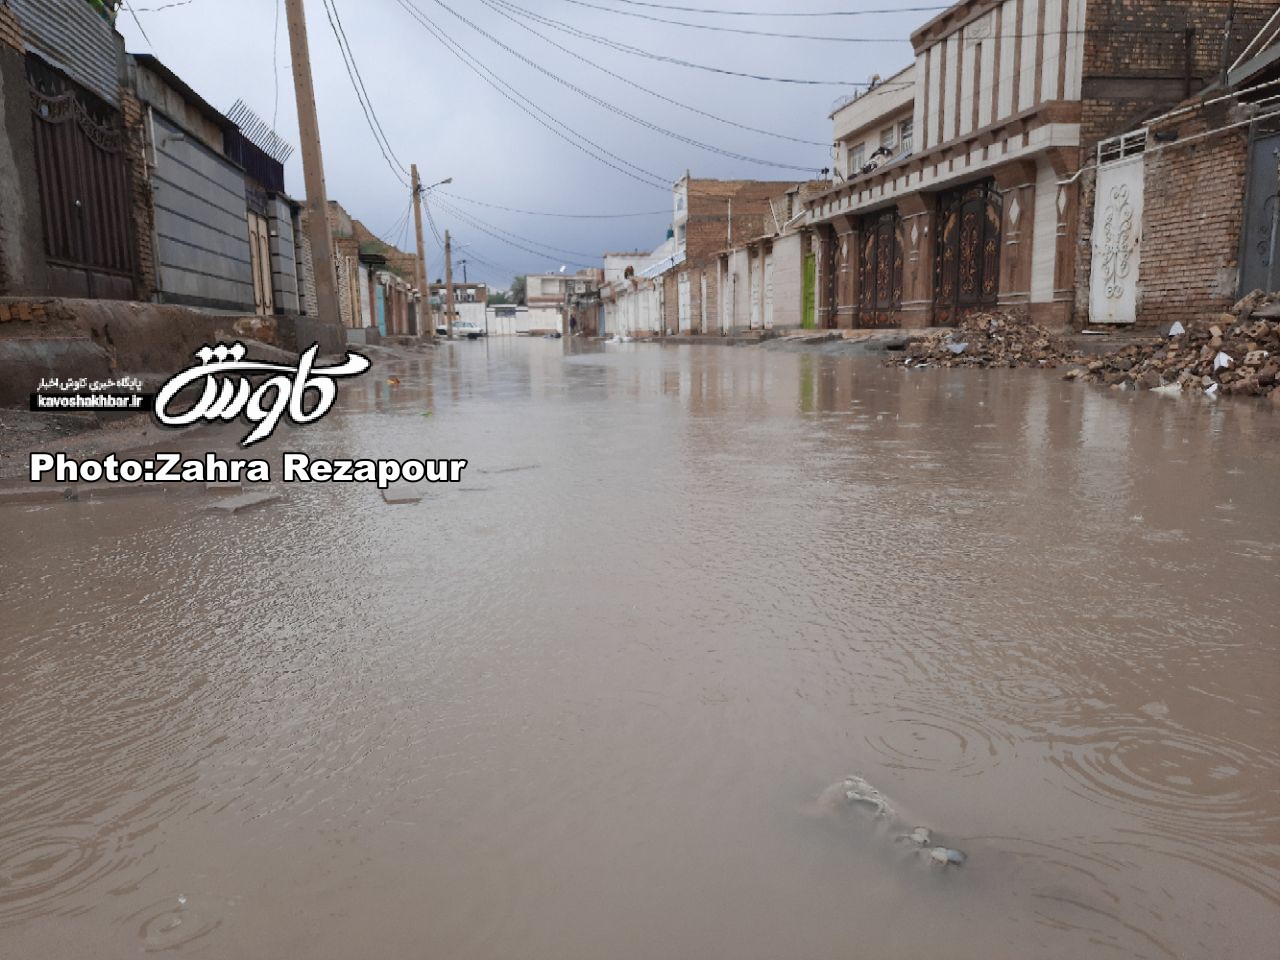 امدادرسانی به ۱۲۱۲ خانوار متاثر از بارندگی در خوزستان / برپایی ۴ مرکز اسکان در ماهشهر